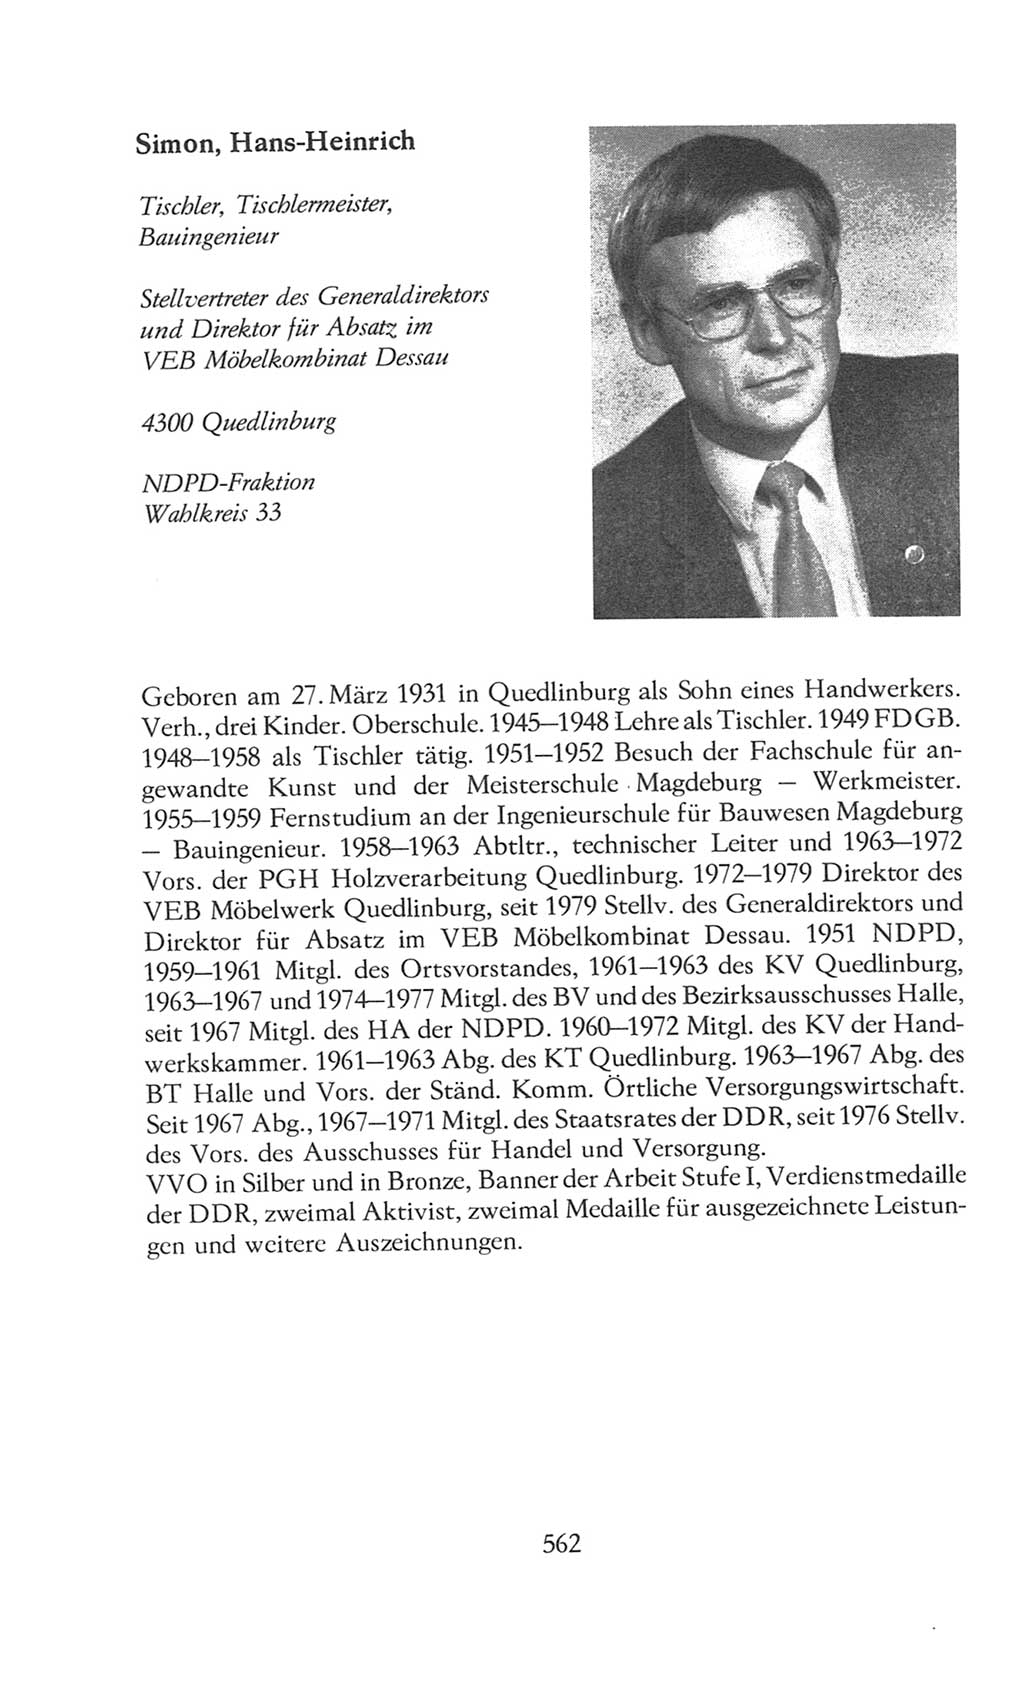 Volkskammer (VK) der Deutschen Demokratischen Republik (DDR), 8. Wahlperiode 1981-1986, Seite 562 (VK. DDR 8. WP. 1981-1986, S. 562)